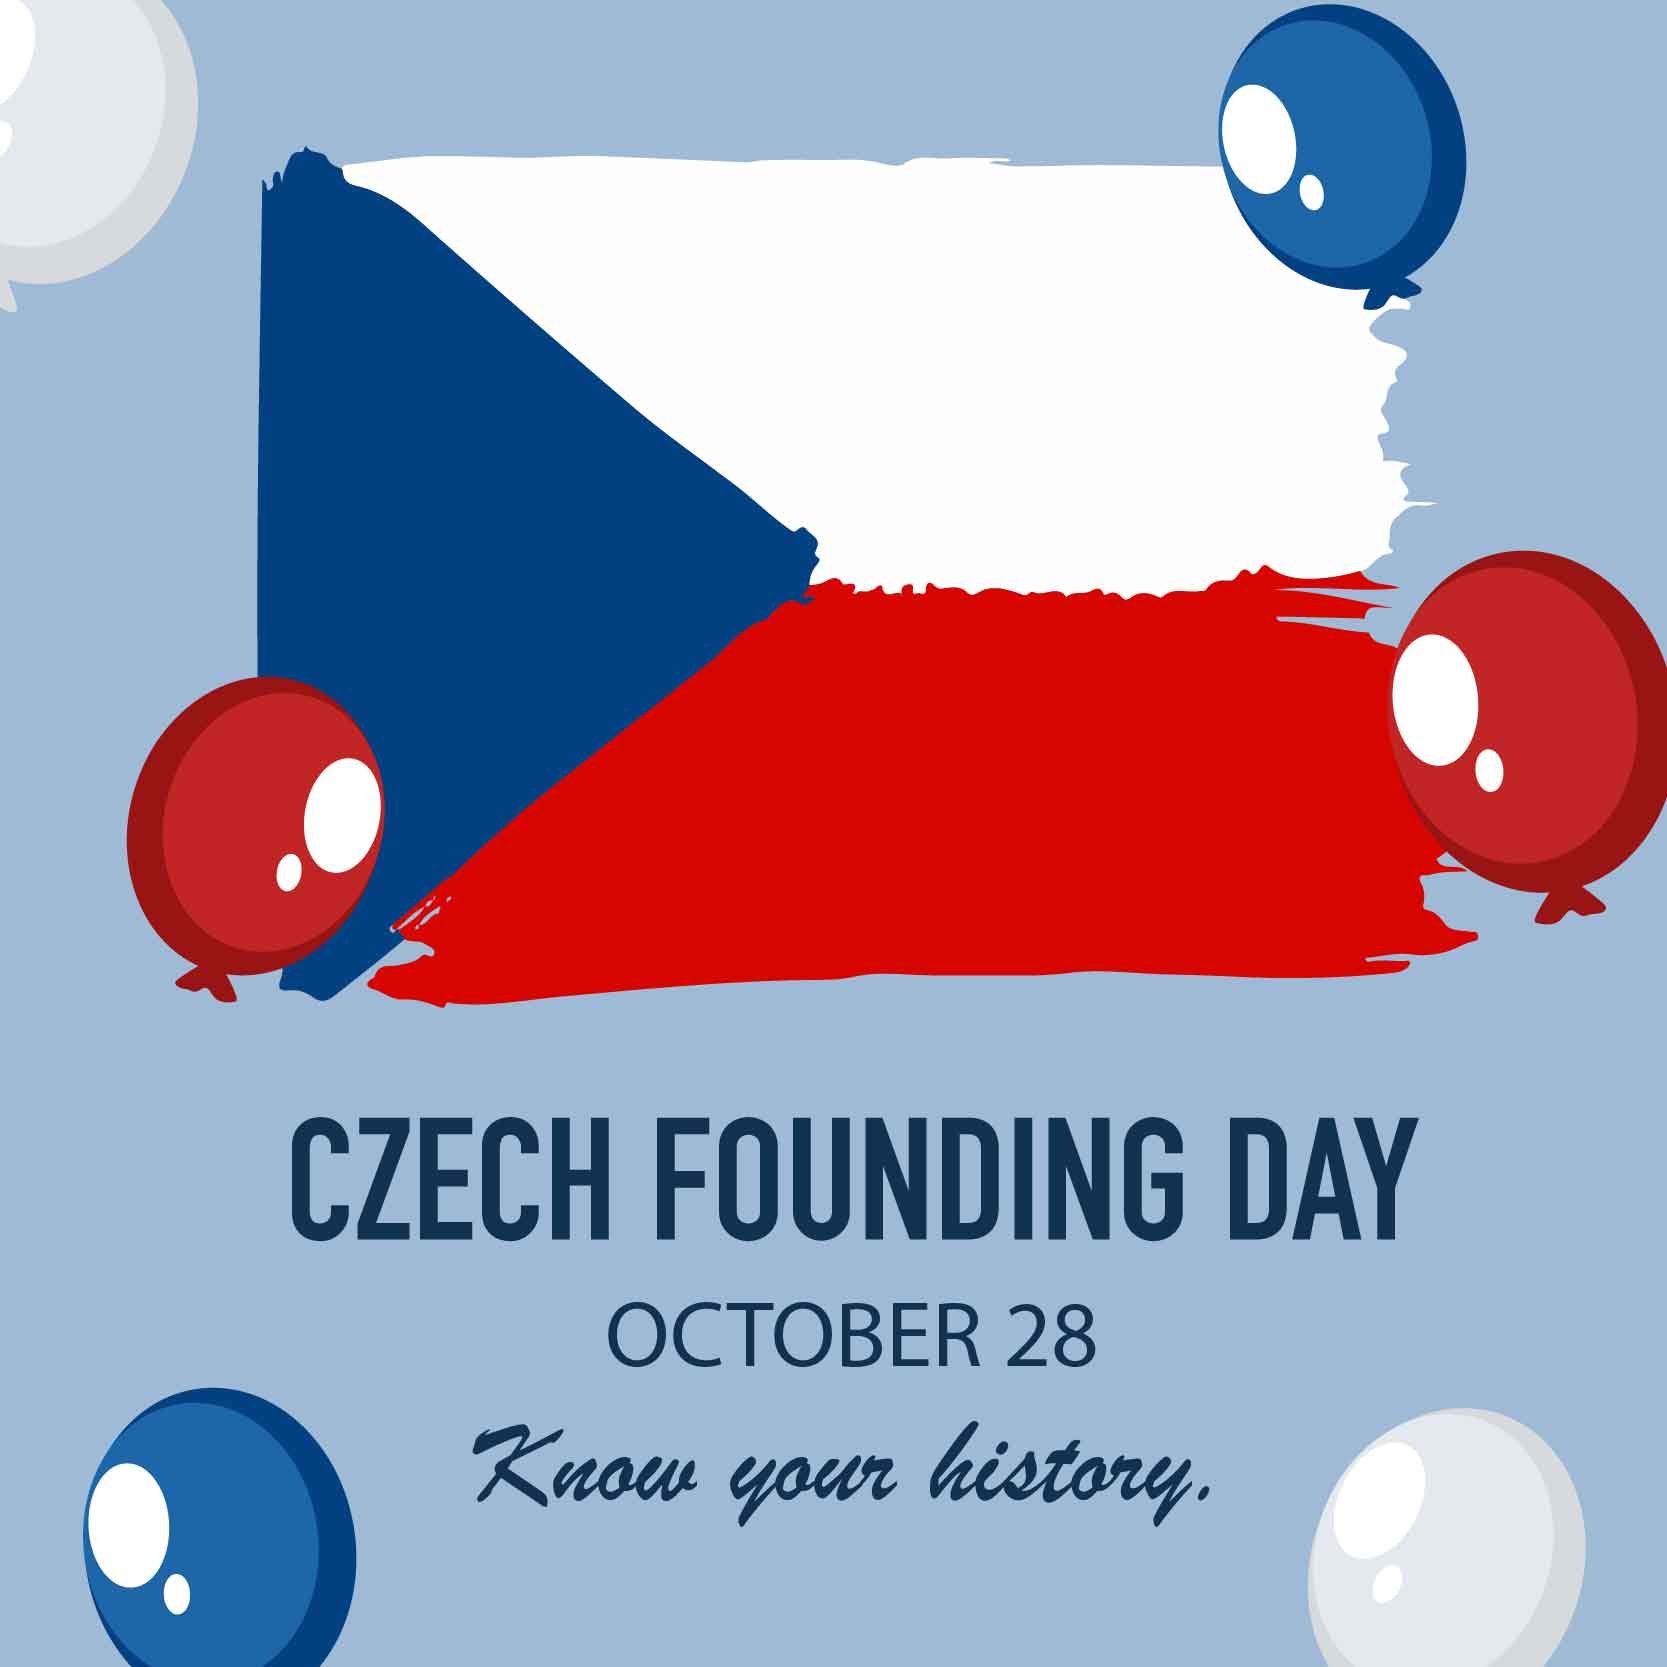 Czech Founding Day Whatsapp Post in Illustrator, PSD, EPS, SVG, JPG, PNG